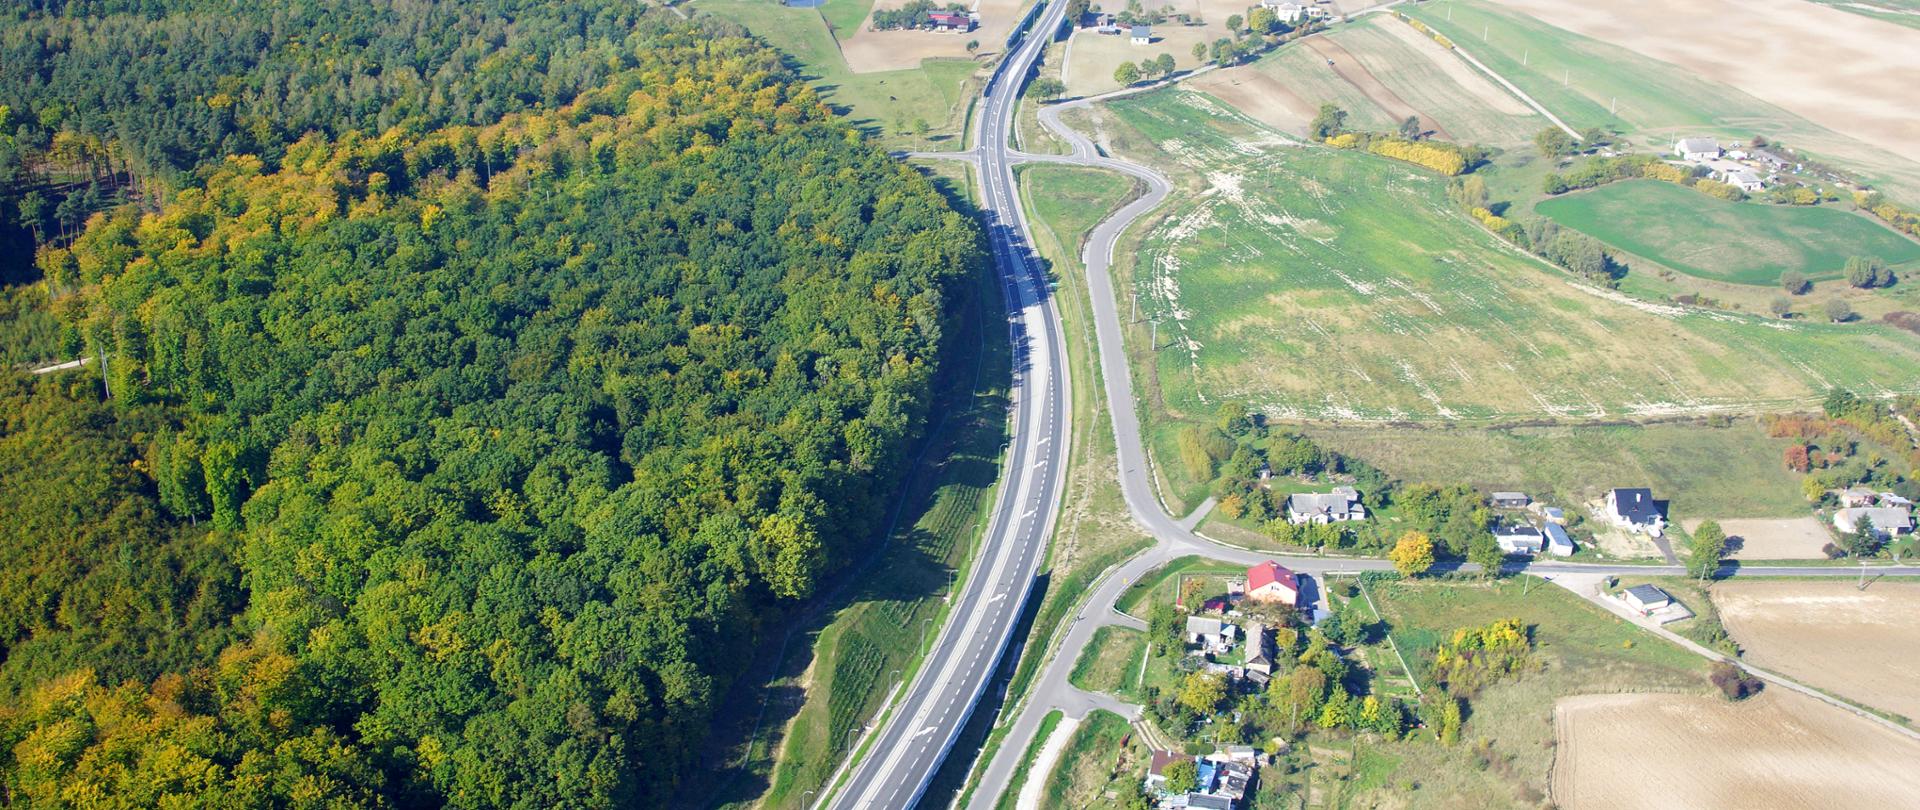 Zdjęcie przedstawia widok z lotu ptaka na drogę krajową obok drogi po lewej stronie las po prawej krajobraz rolniczy z zabudowaniami miejscowości.